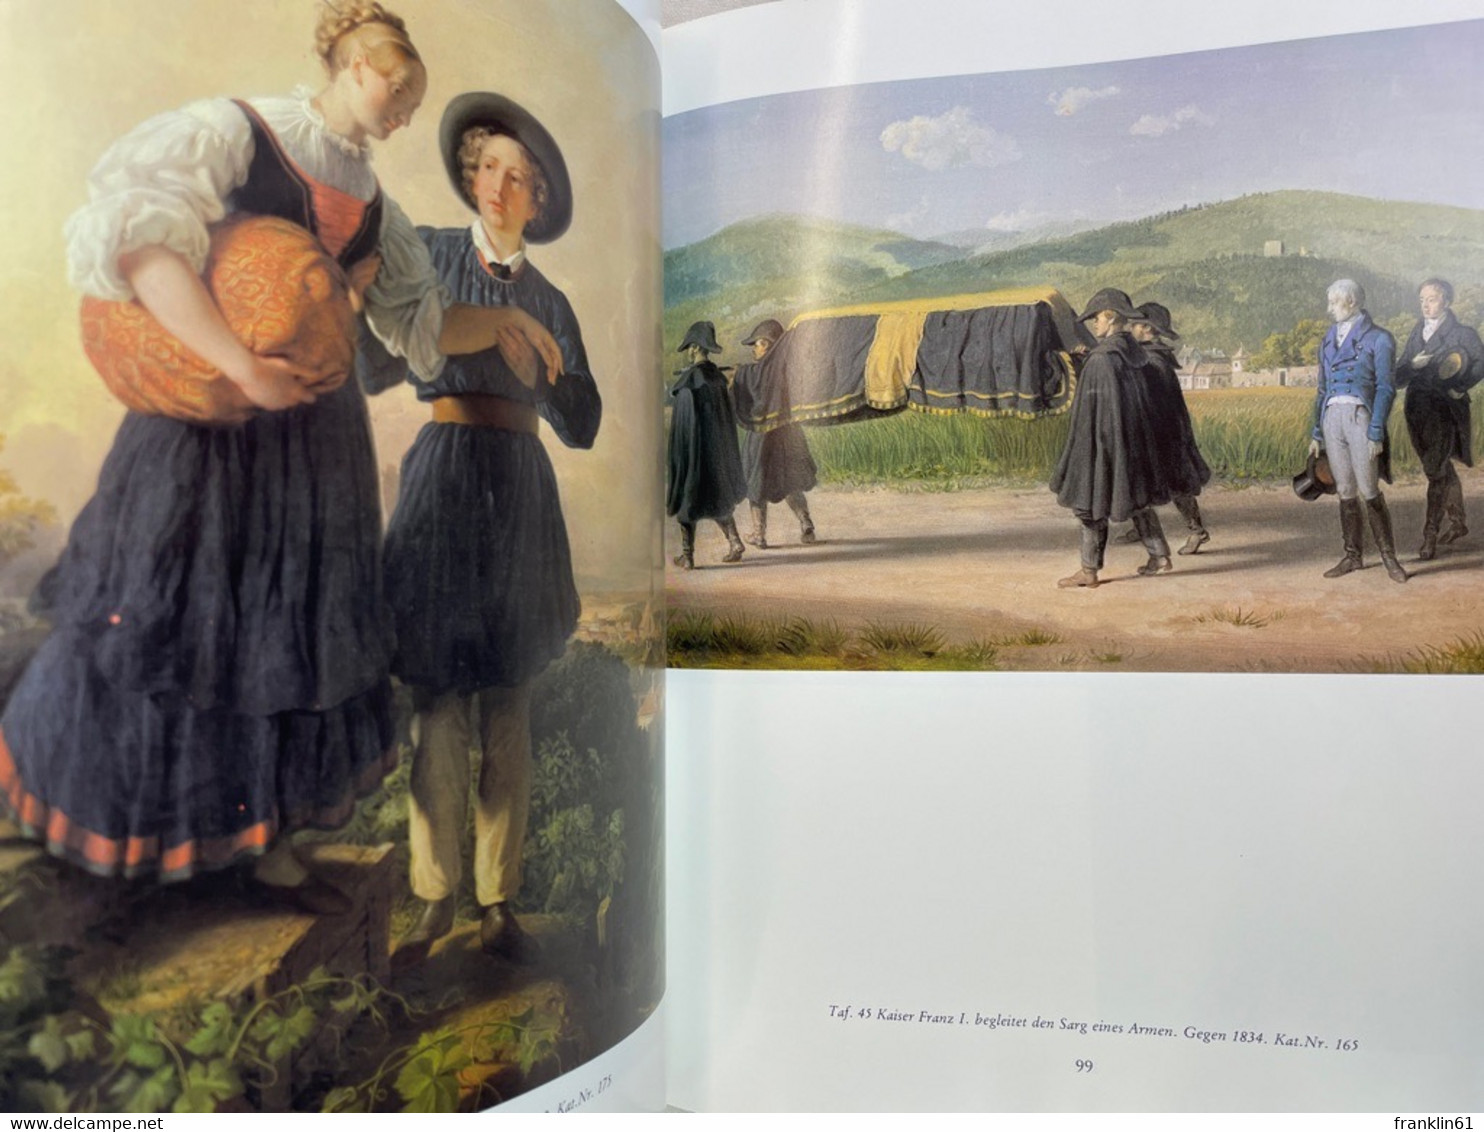 Johann Peter Krafft : 1780 - 1856 ; Monographie Und Verzeichnis Der Gemälde. - Peinture & Sculpture